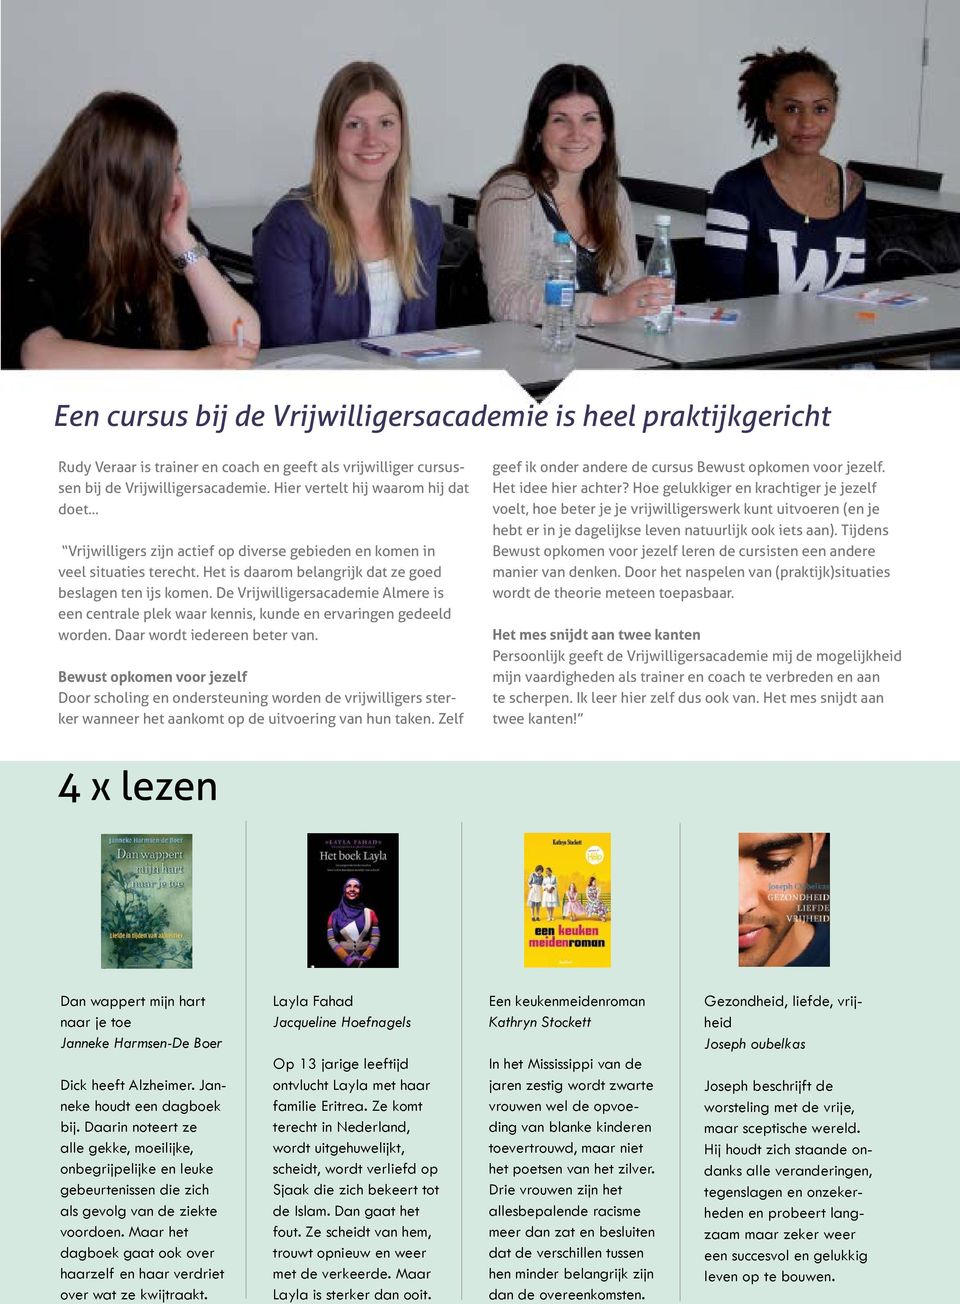 De Vrijwilligersacademie Almere is een centrale plek waar kennis, kunde en ervaringen gedeeld worden. Daar wordt iedereen beter van.